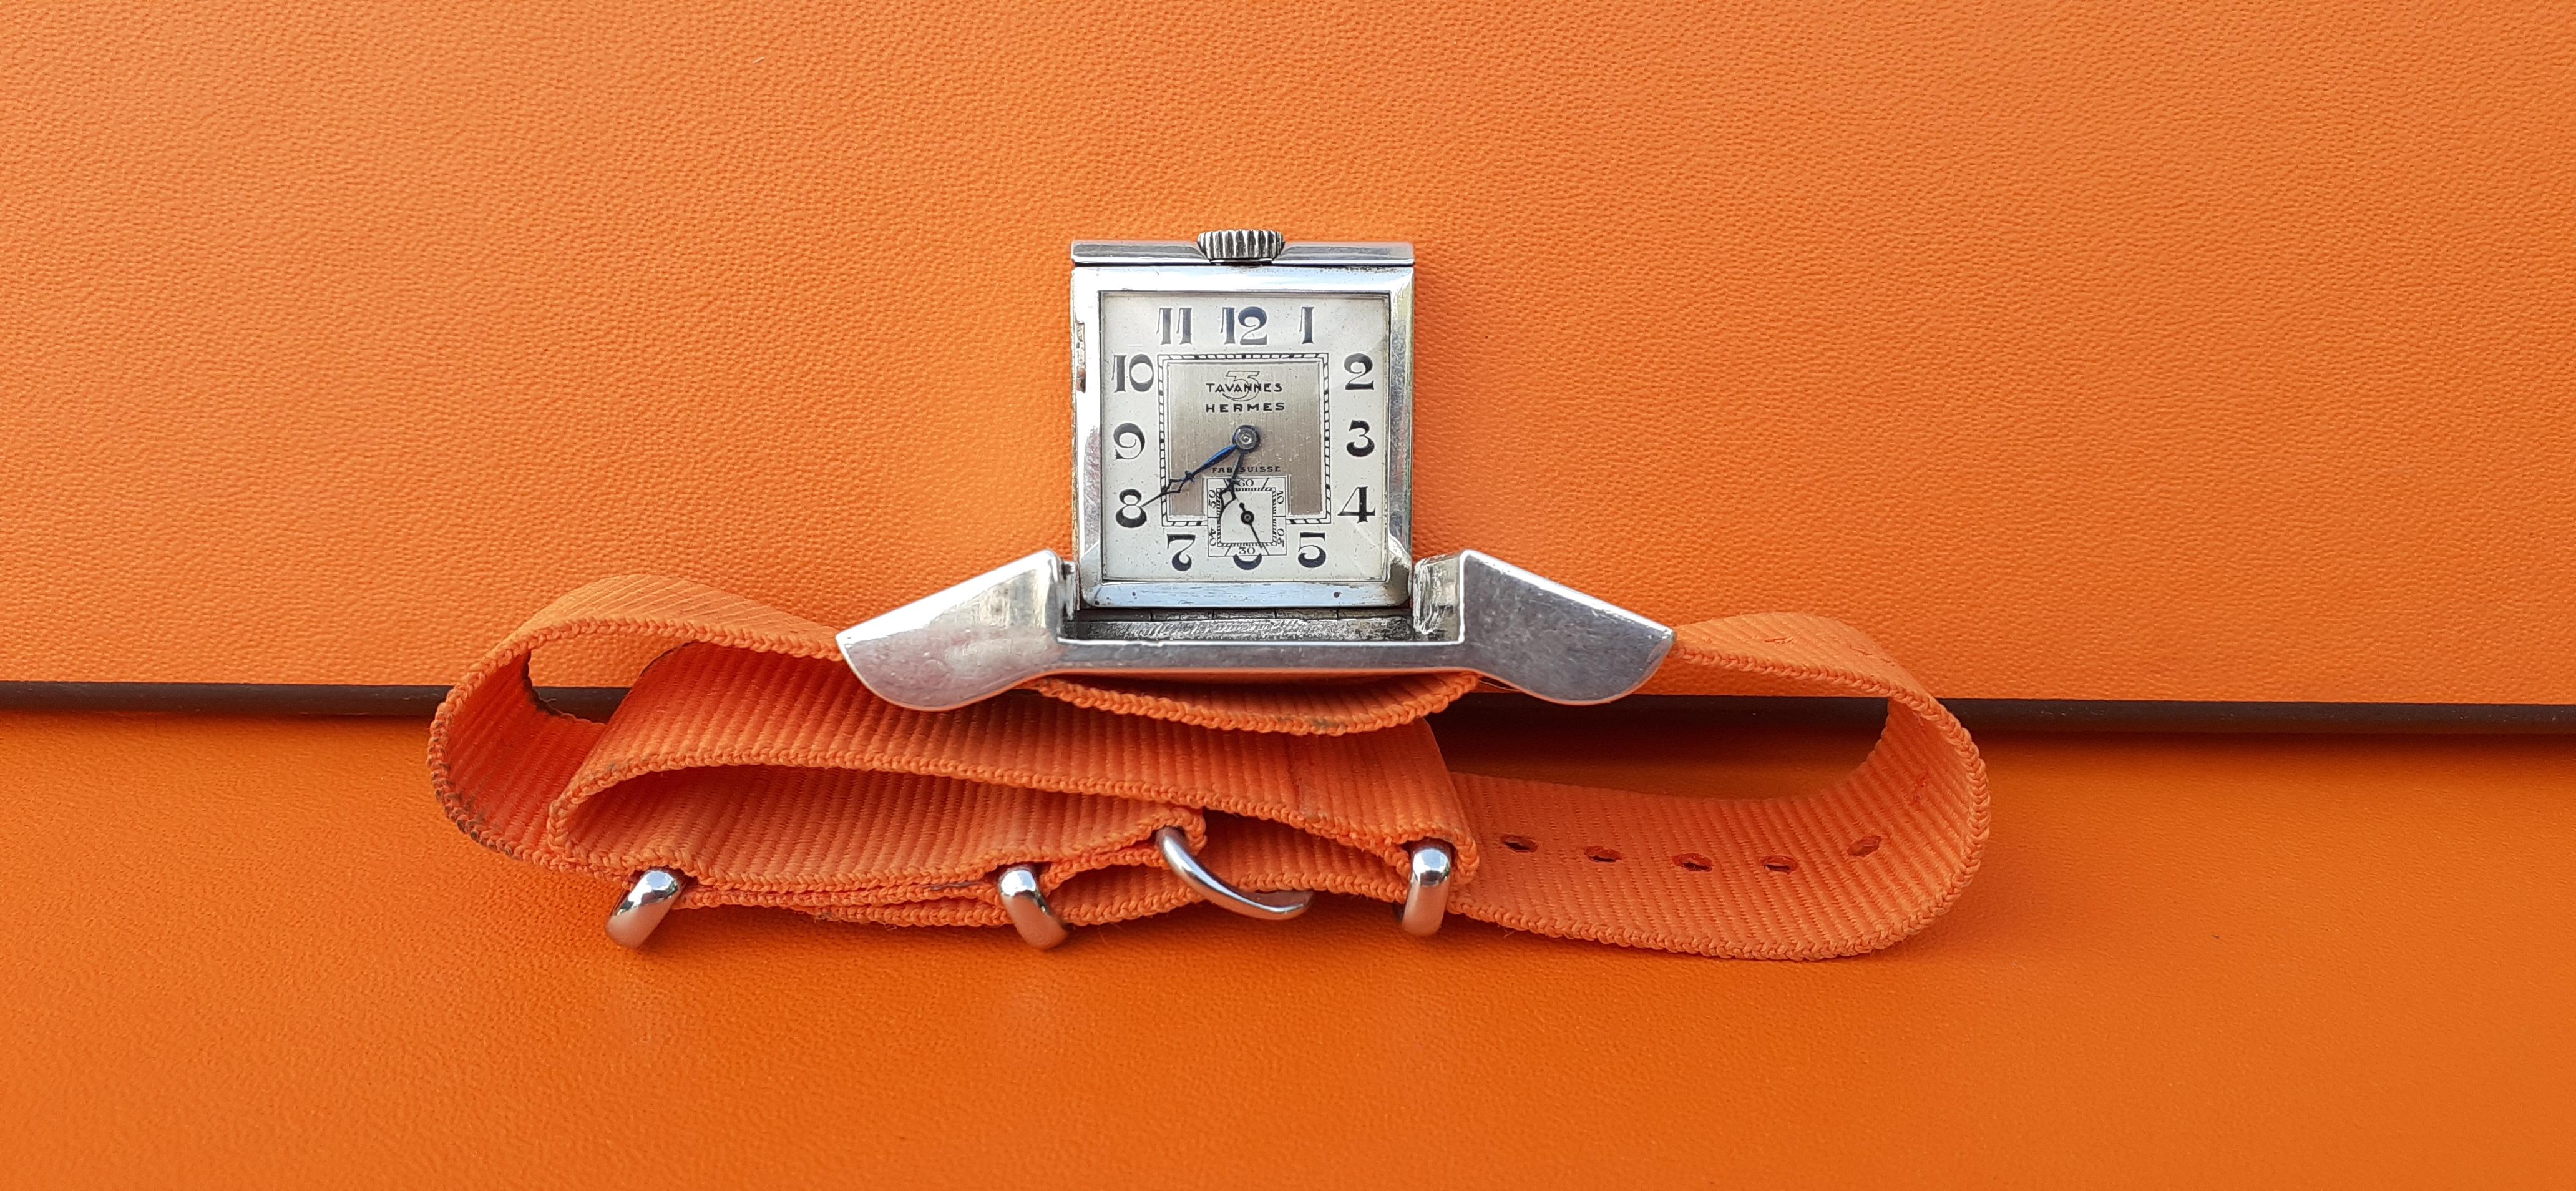 Exceptionnal Tavannes for Hermès Vintage Belt Buckle Golf Watch in Silver RARE 5